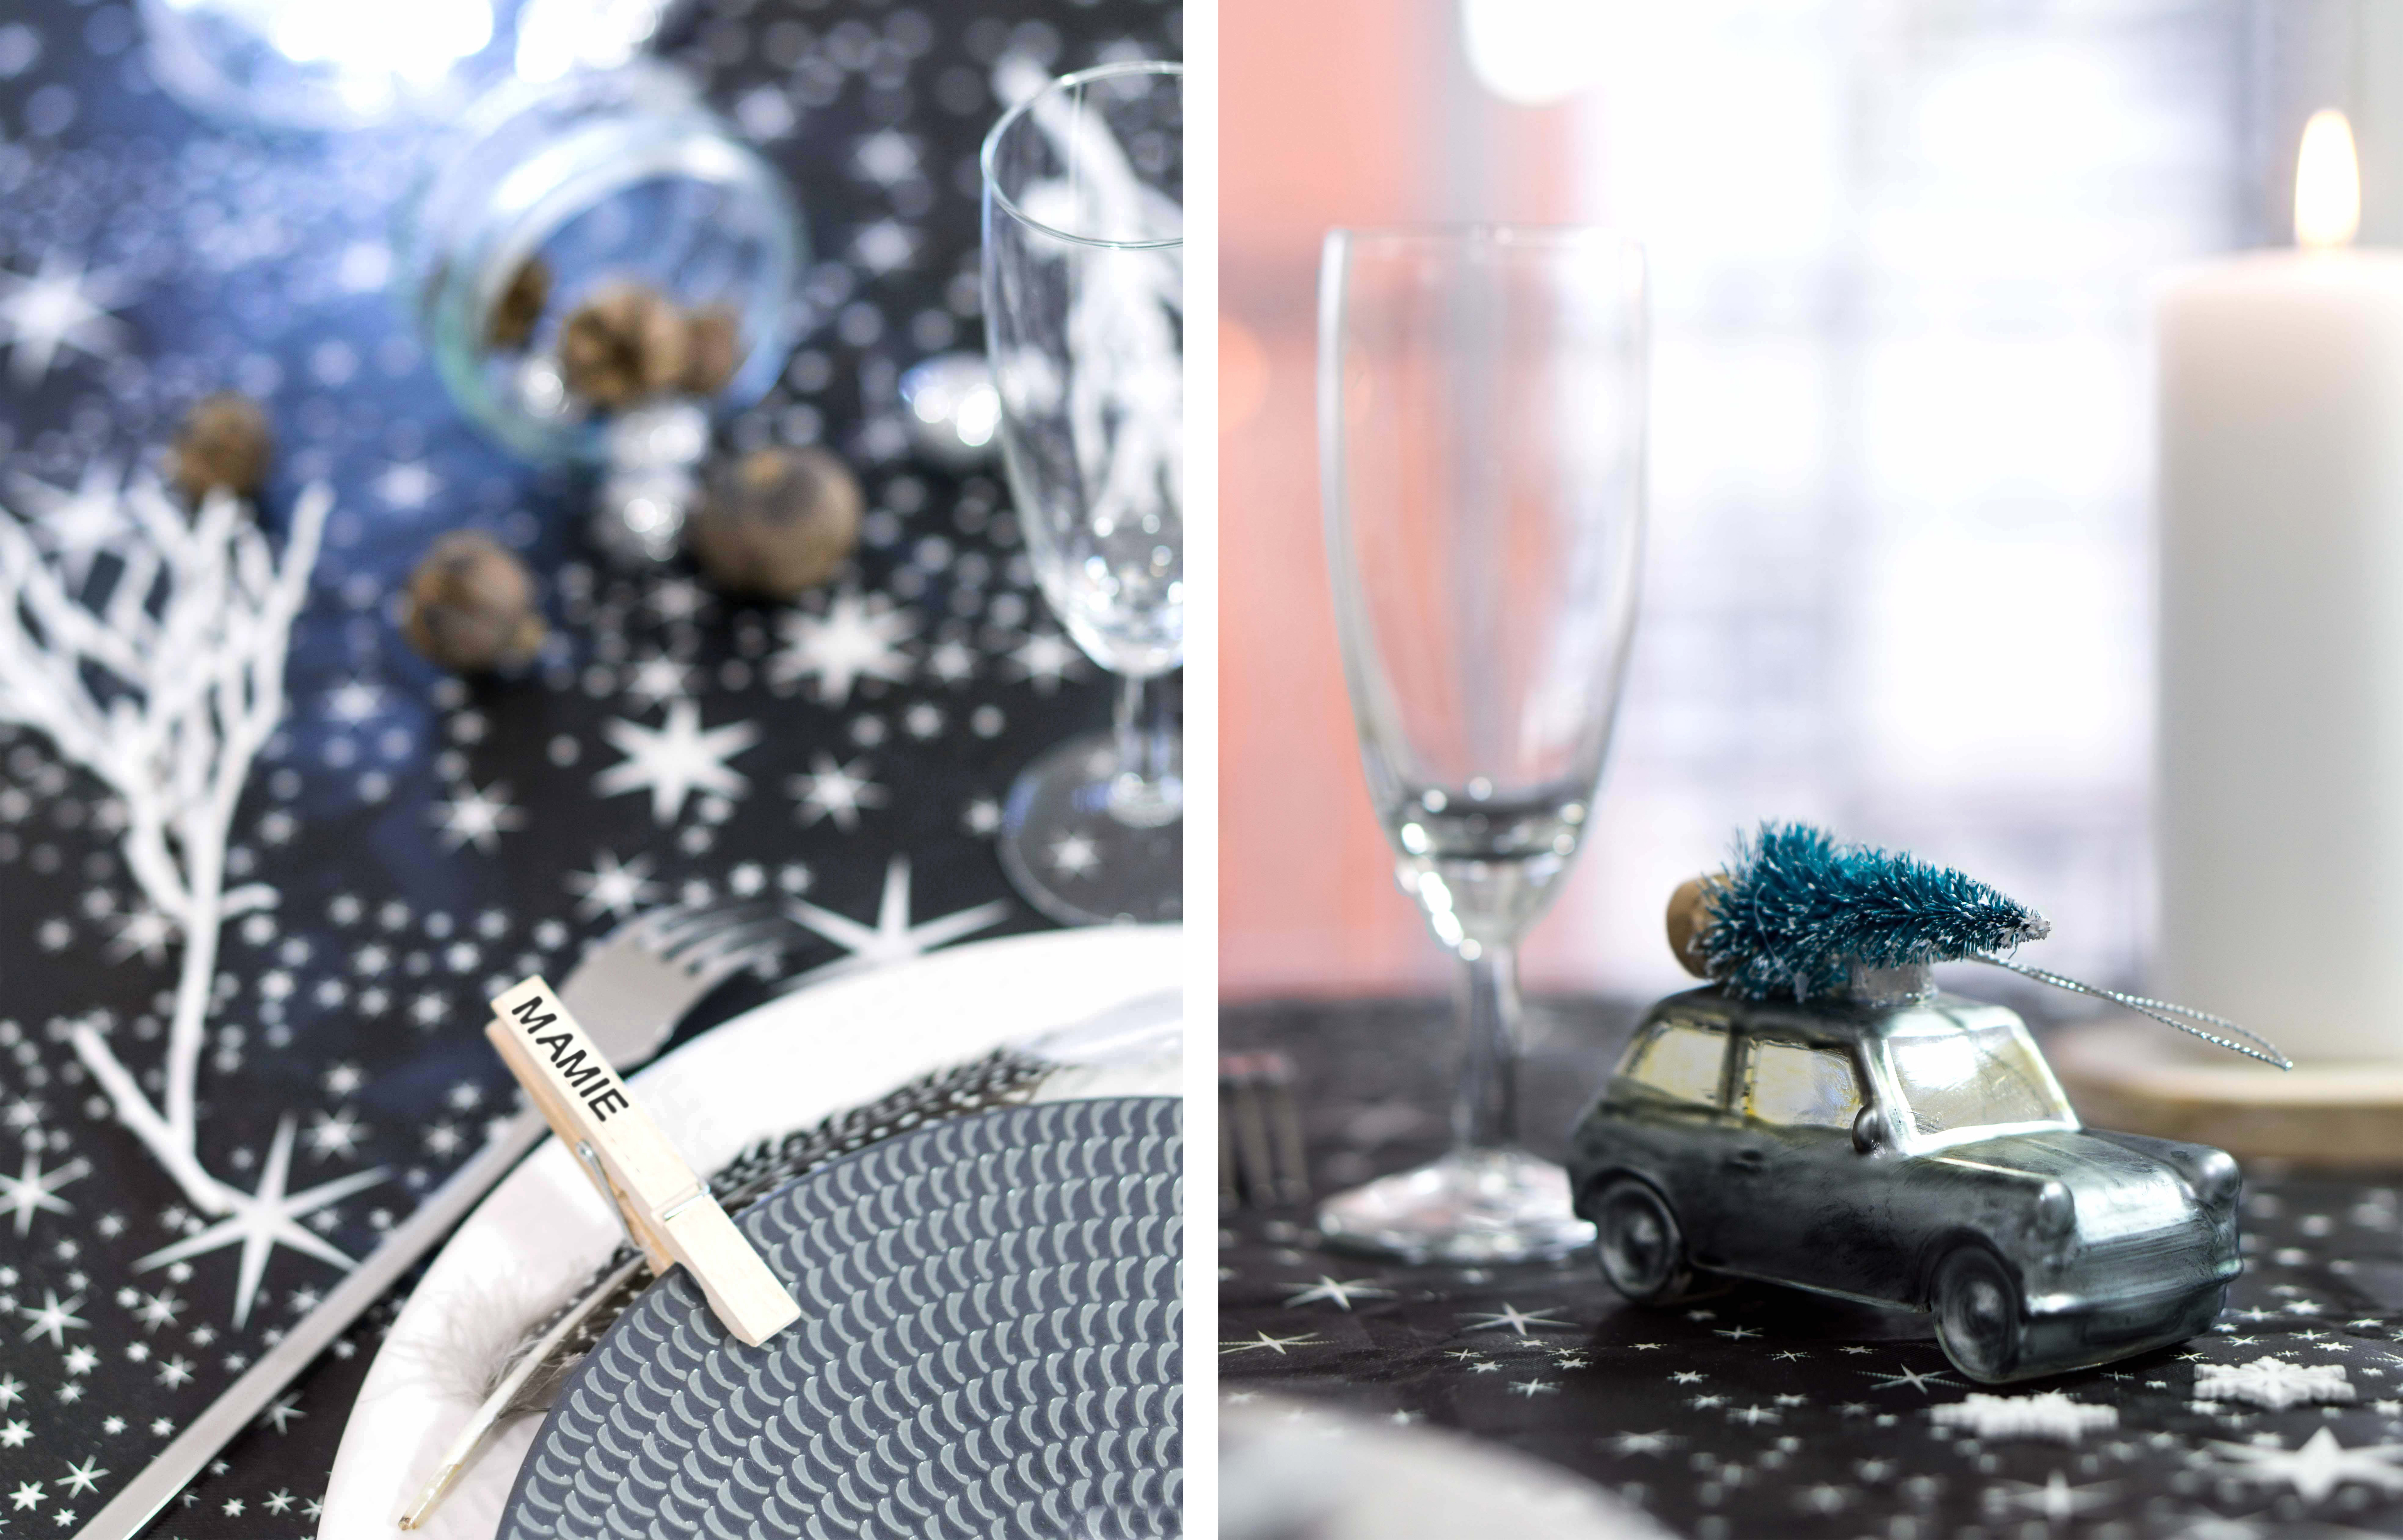 2-table de noel-decoration-noir-argent-etoiles-article-blog-oberthur-lifestyle-papeterie-rennes